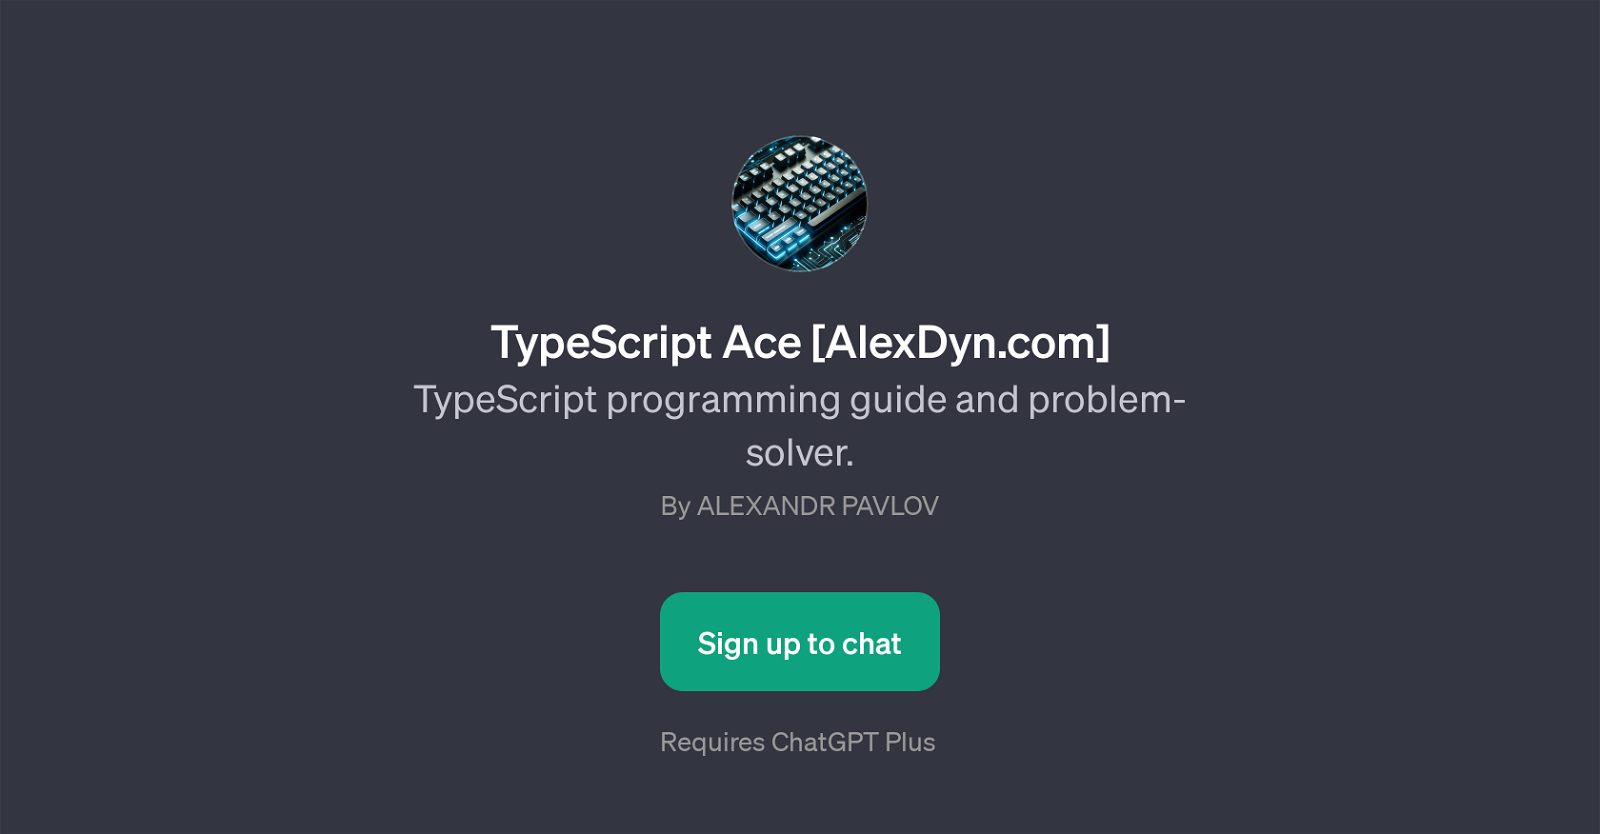 TypeScript Ace website